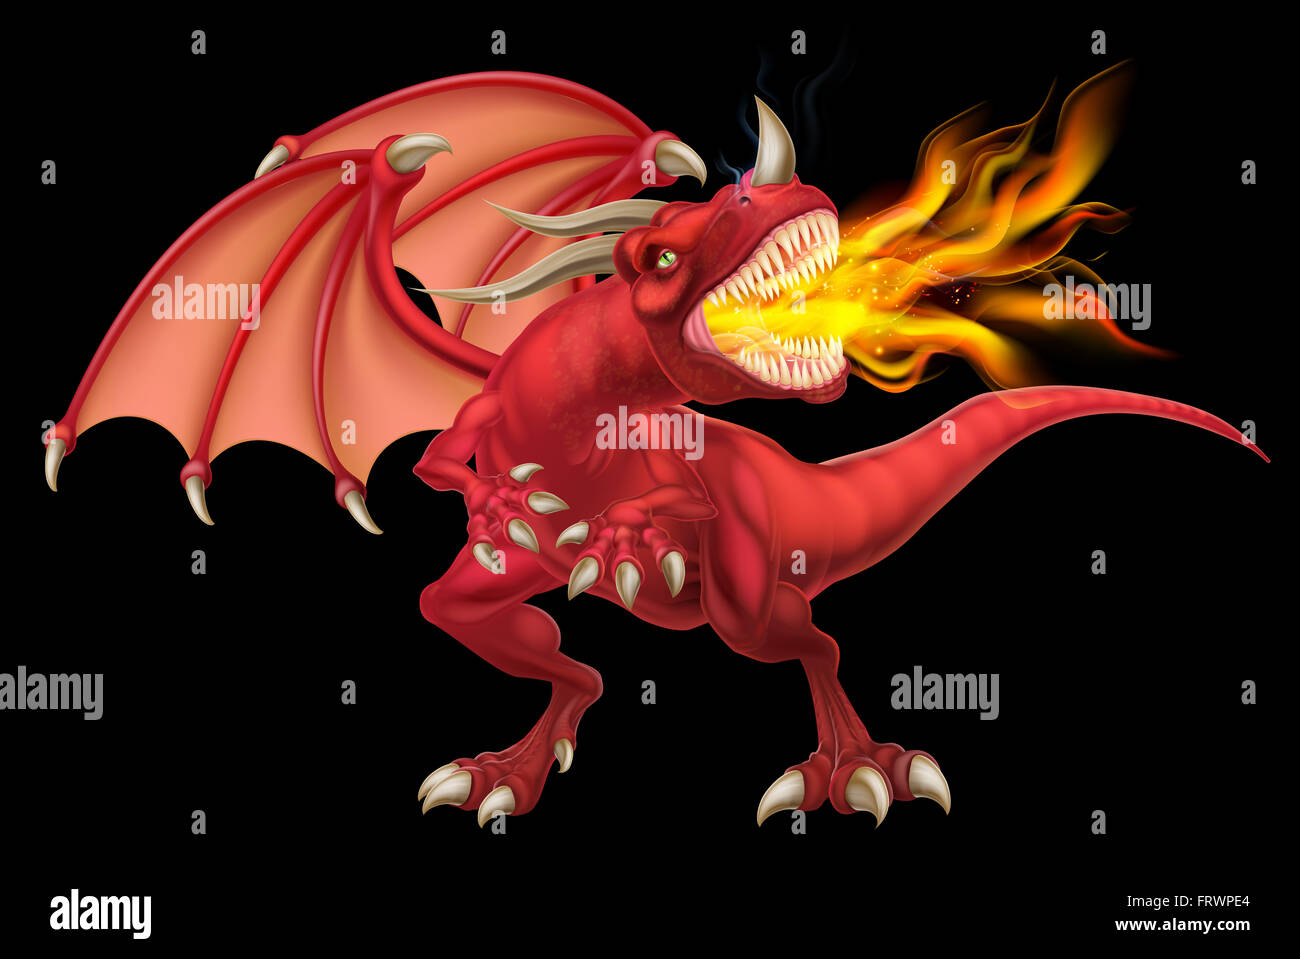 Una illustrazione di una media cercando fantasy fiaba rosso fuoco respirazione dragon Foto Stock